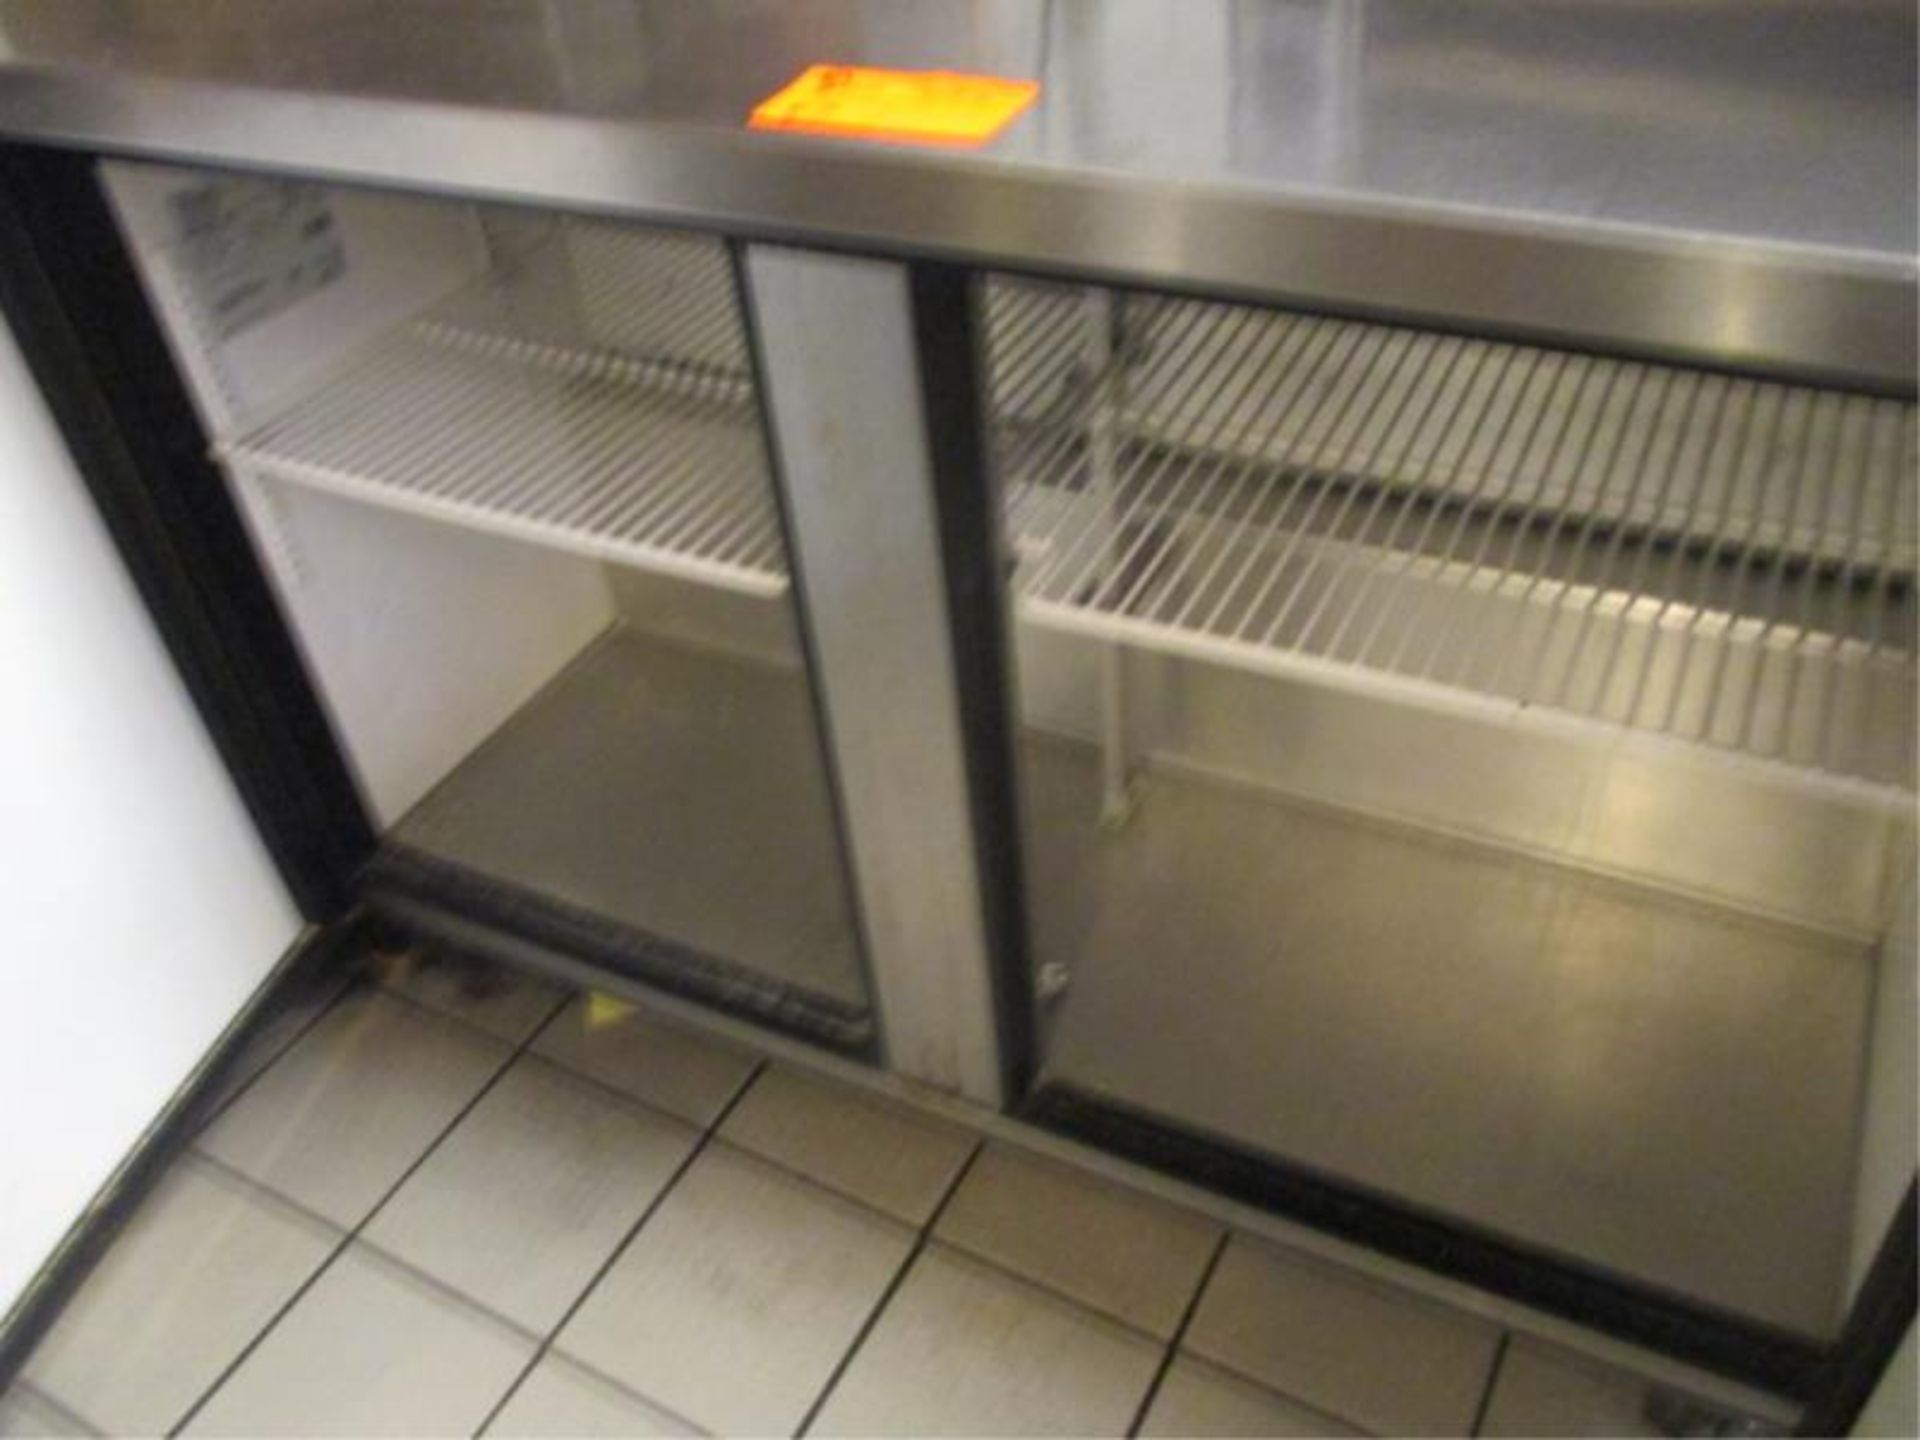 Two Door Worktop Freezer by True, Model: TWT-48F, SN: 7278310 4'Lx 30.5"D - Image 2 of 2